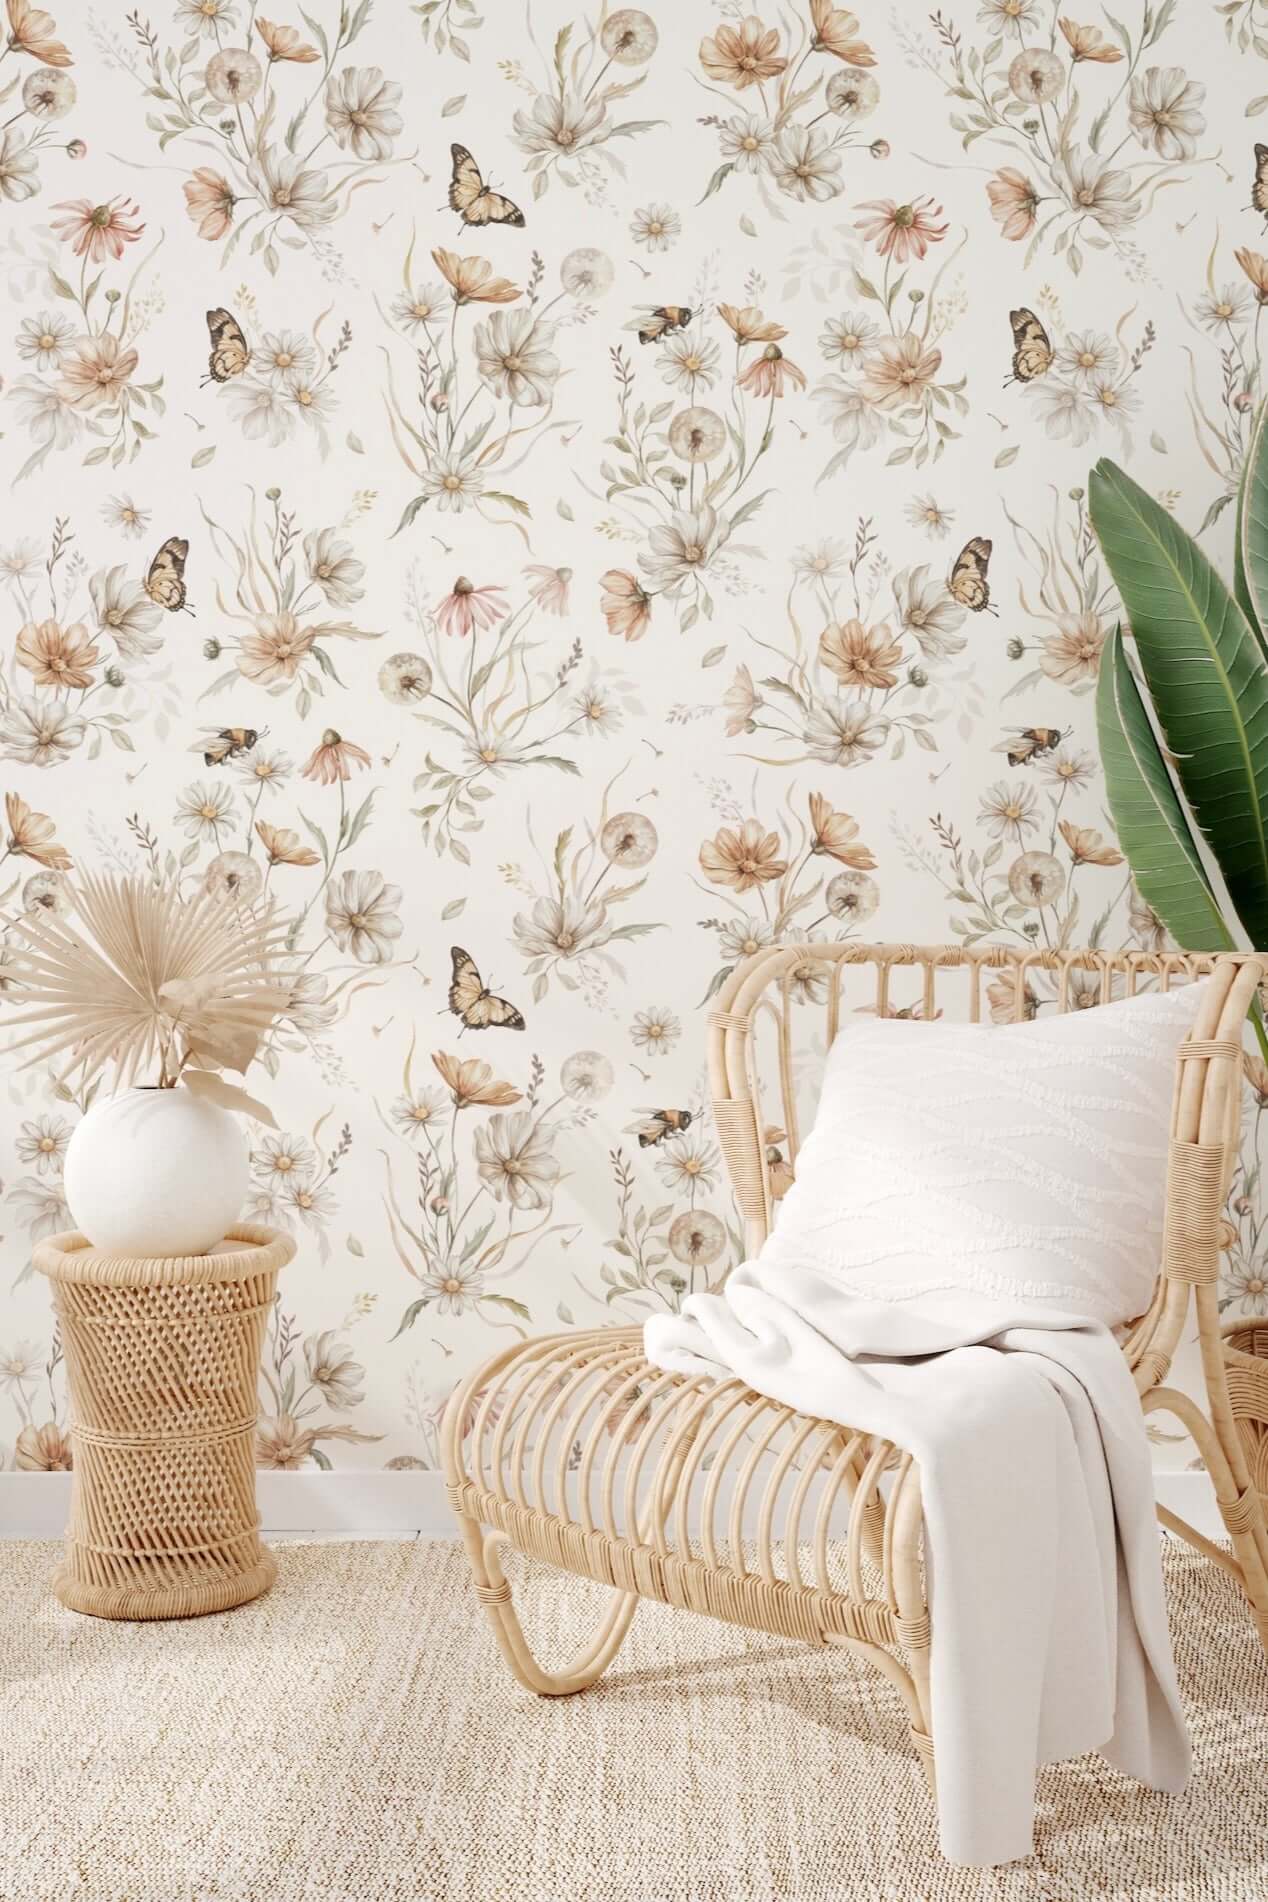  Behang - gouden weide bloemen op wit - grote bloemen patroon | Matuu